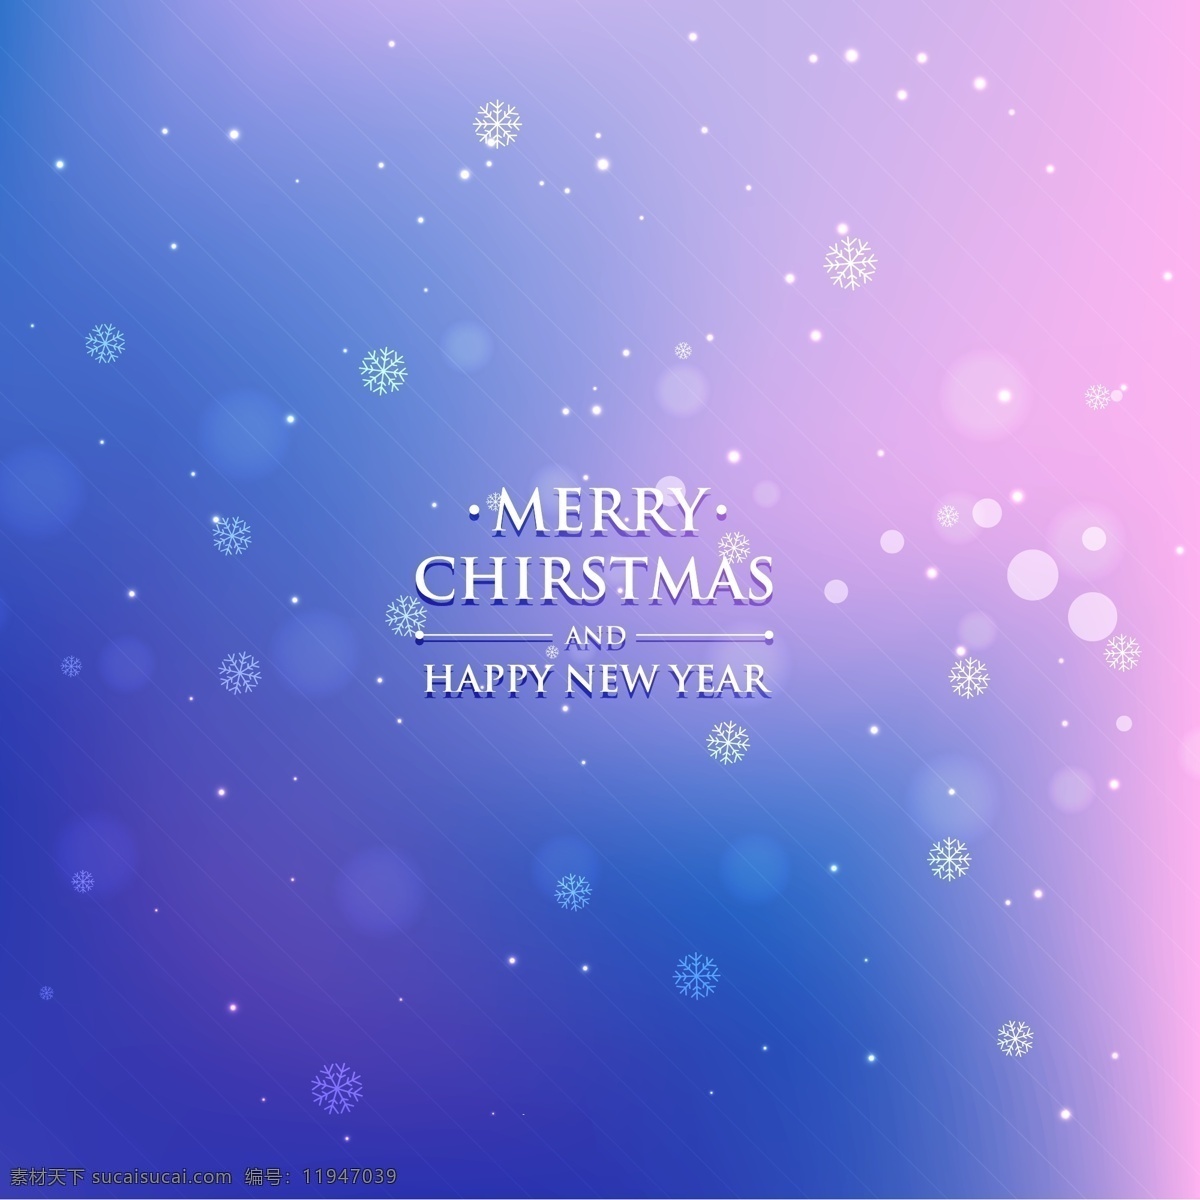 梦幻 圣诞贺卡 矢量 雪花 光晕 圣诞节 贺卡 happy new year 紫蓝色背景 紫色 蓝色 斜线